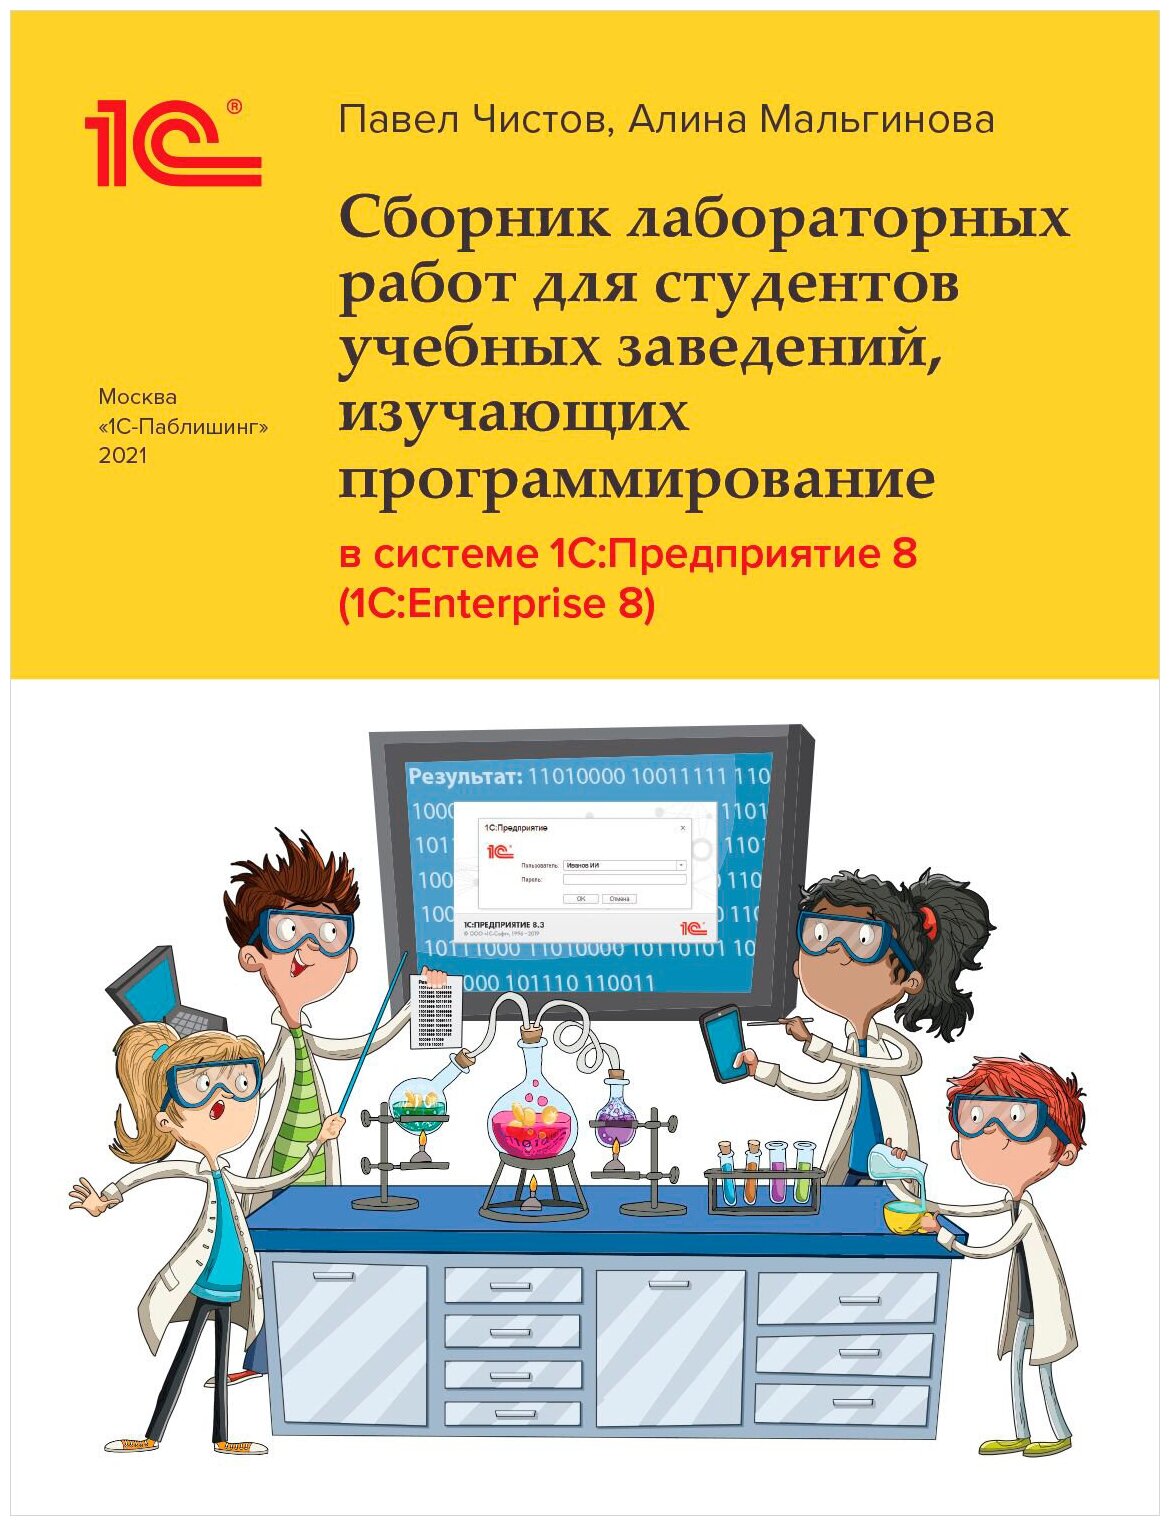 Сборник лабораторных работ в системе 1С: Предприятие (1С: Enterprise)